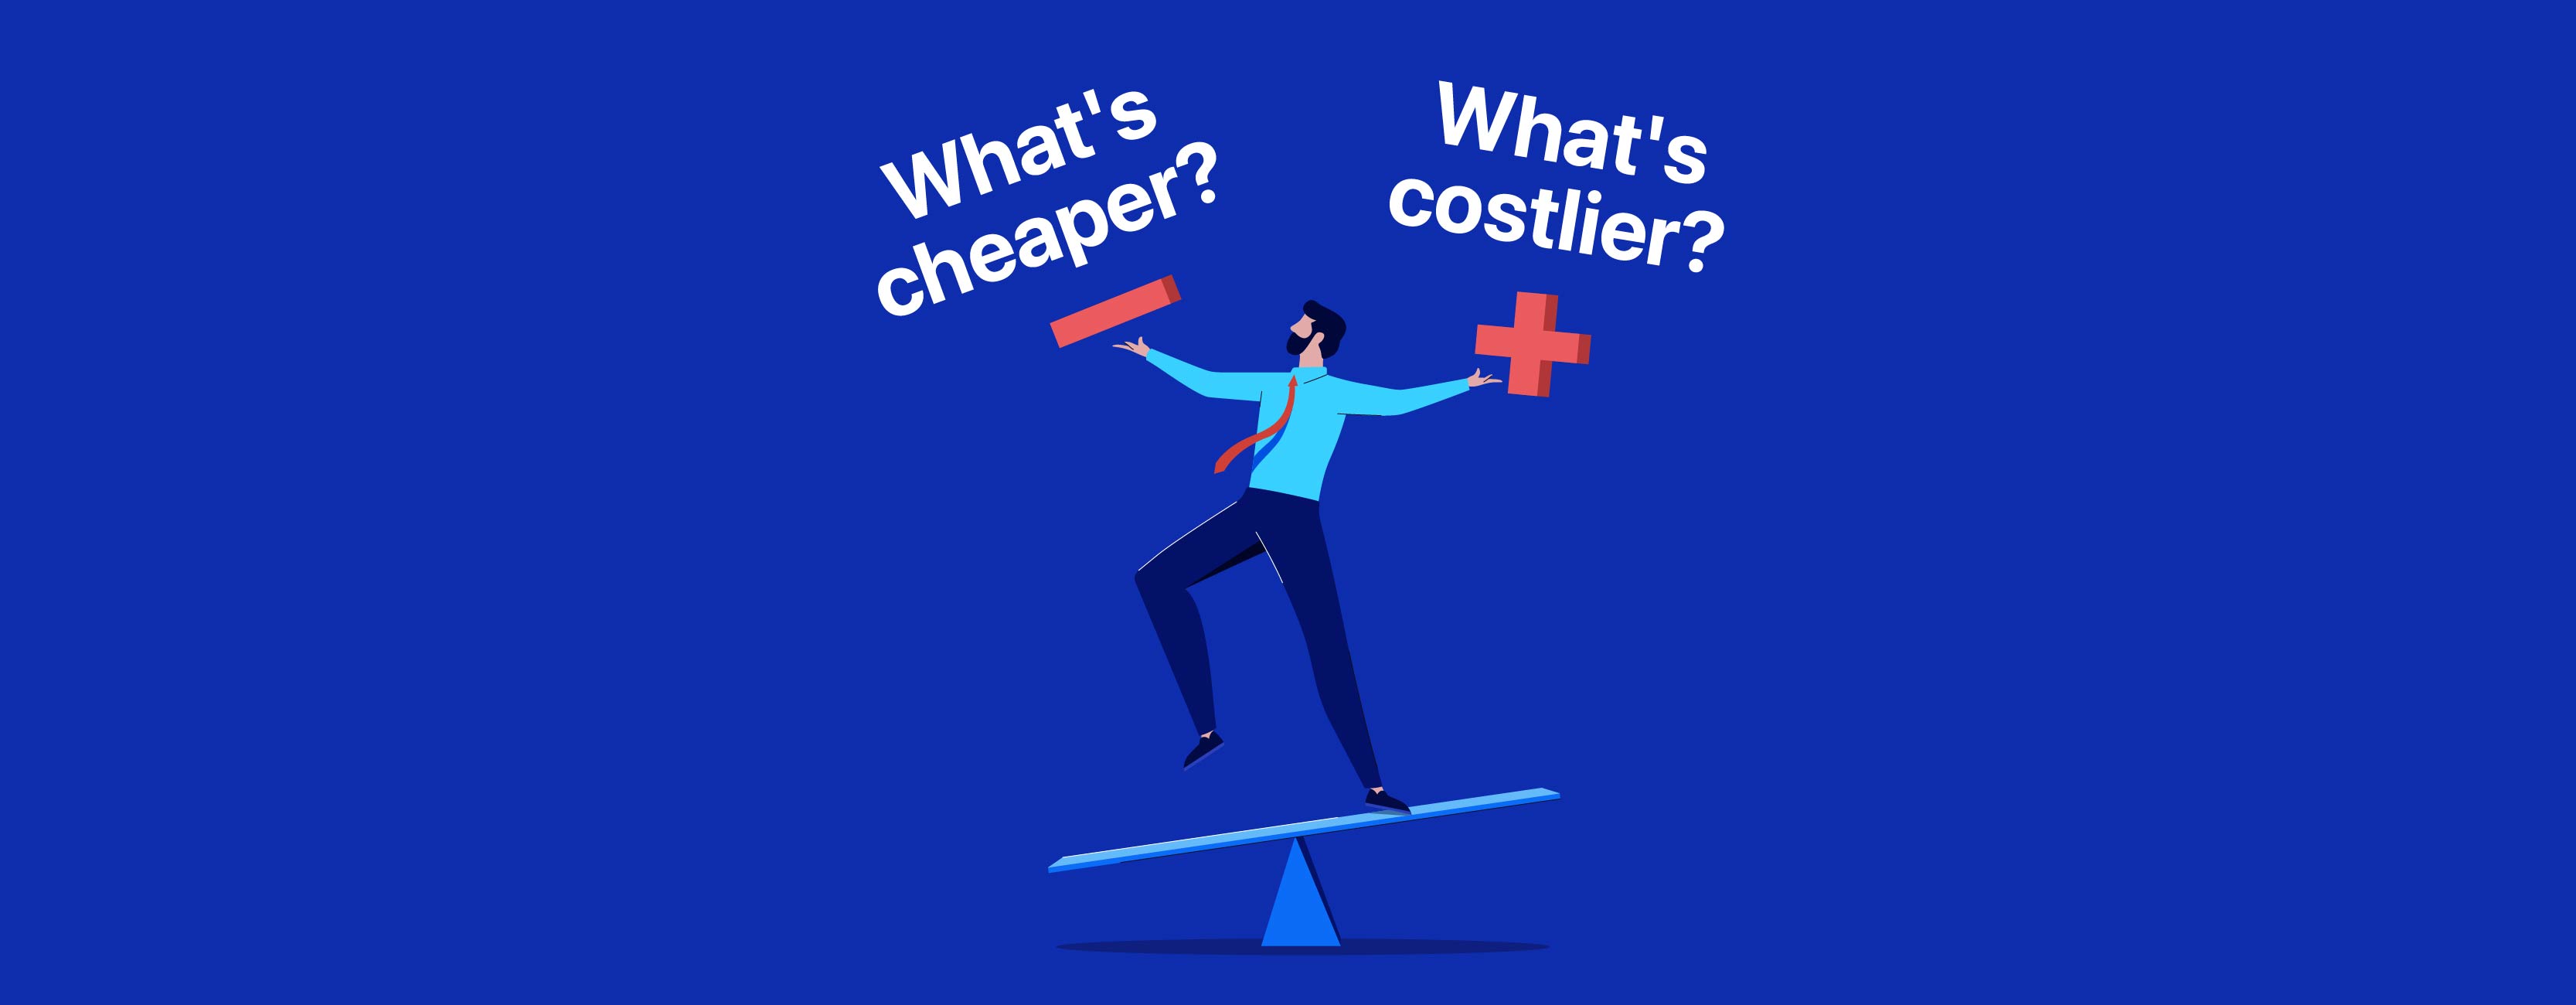 Cheaper v/s Costlier